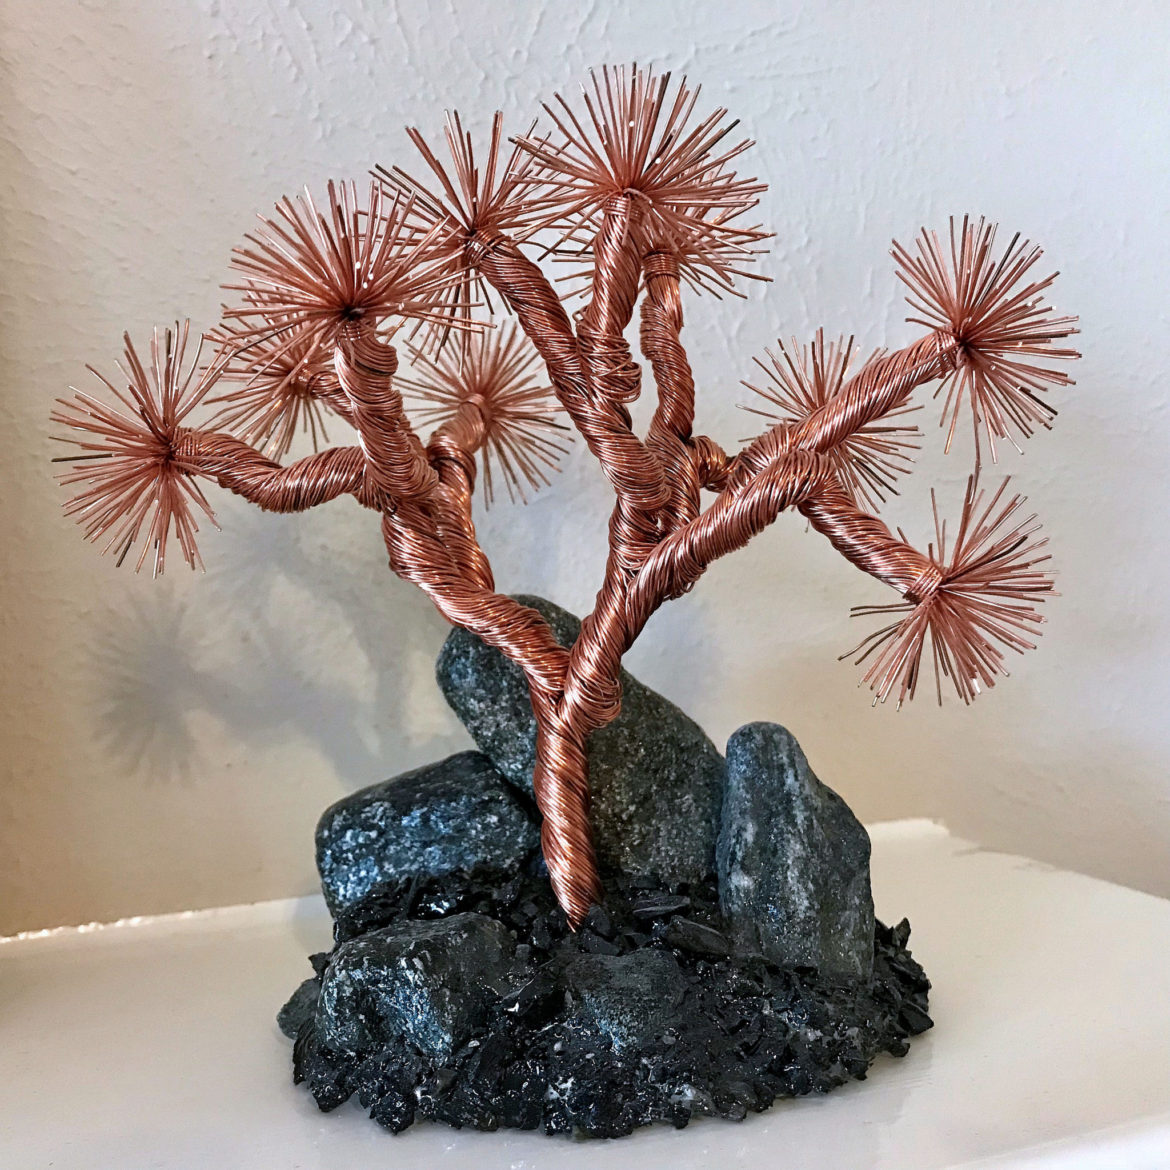 Joshua Tree sculpture